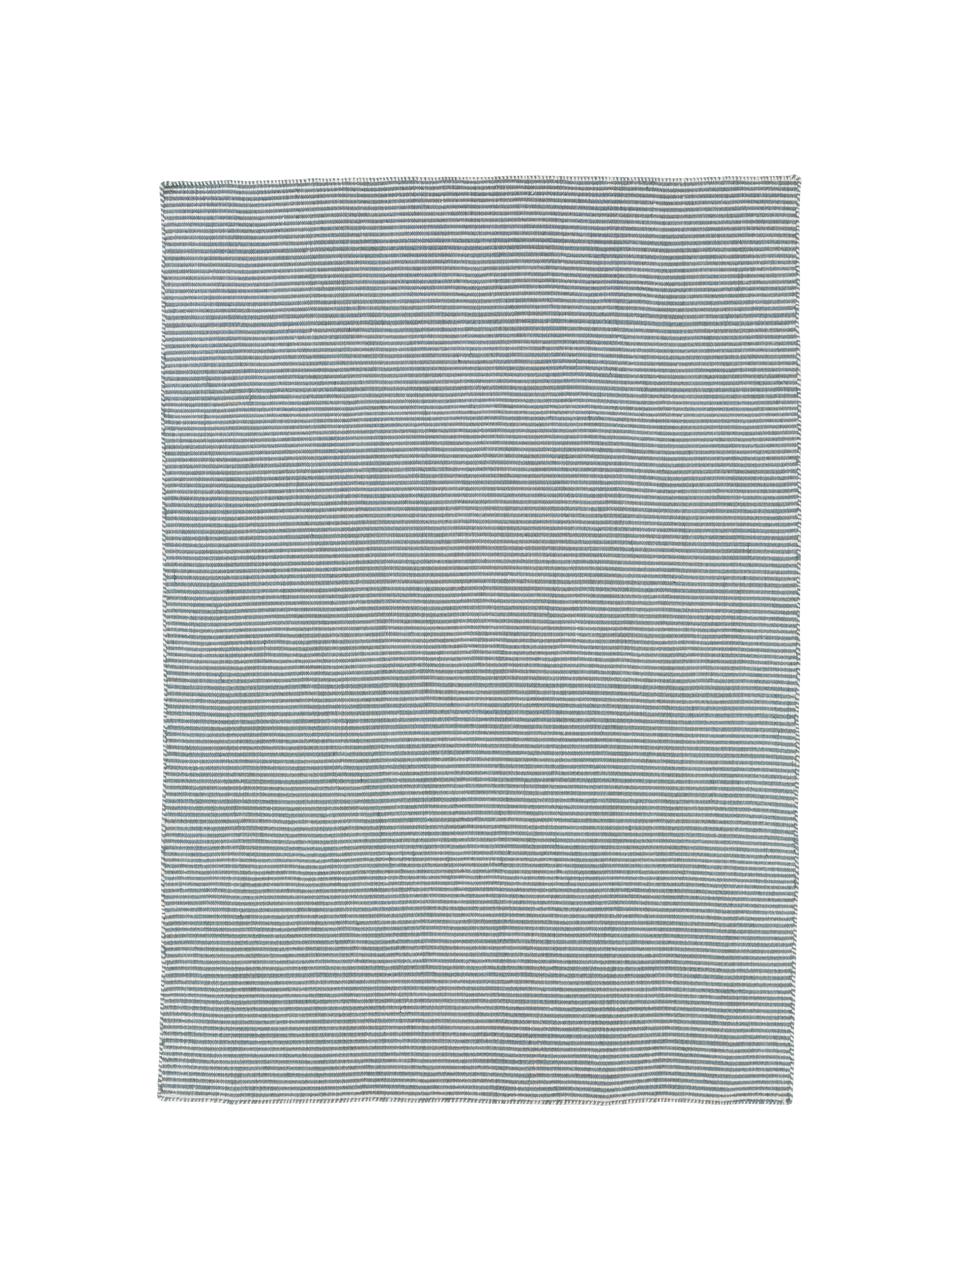 Fein gestreifter Wollteppich Ajo in Blau-Creme, handgewebt, Graublau, Creme, B 200 x L 300 cm (Größe L)